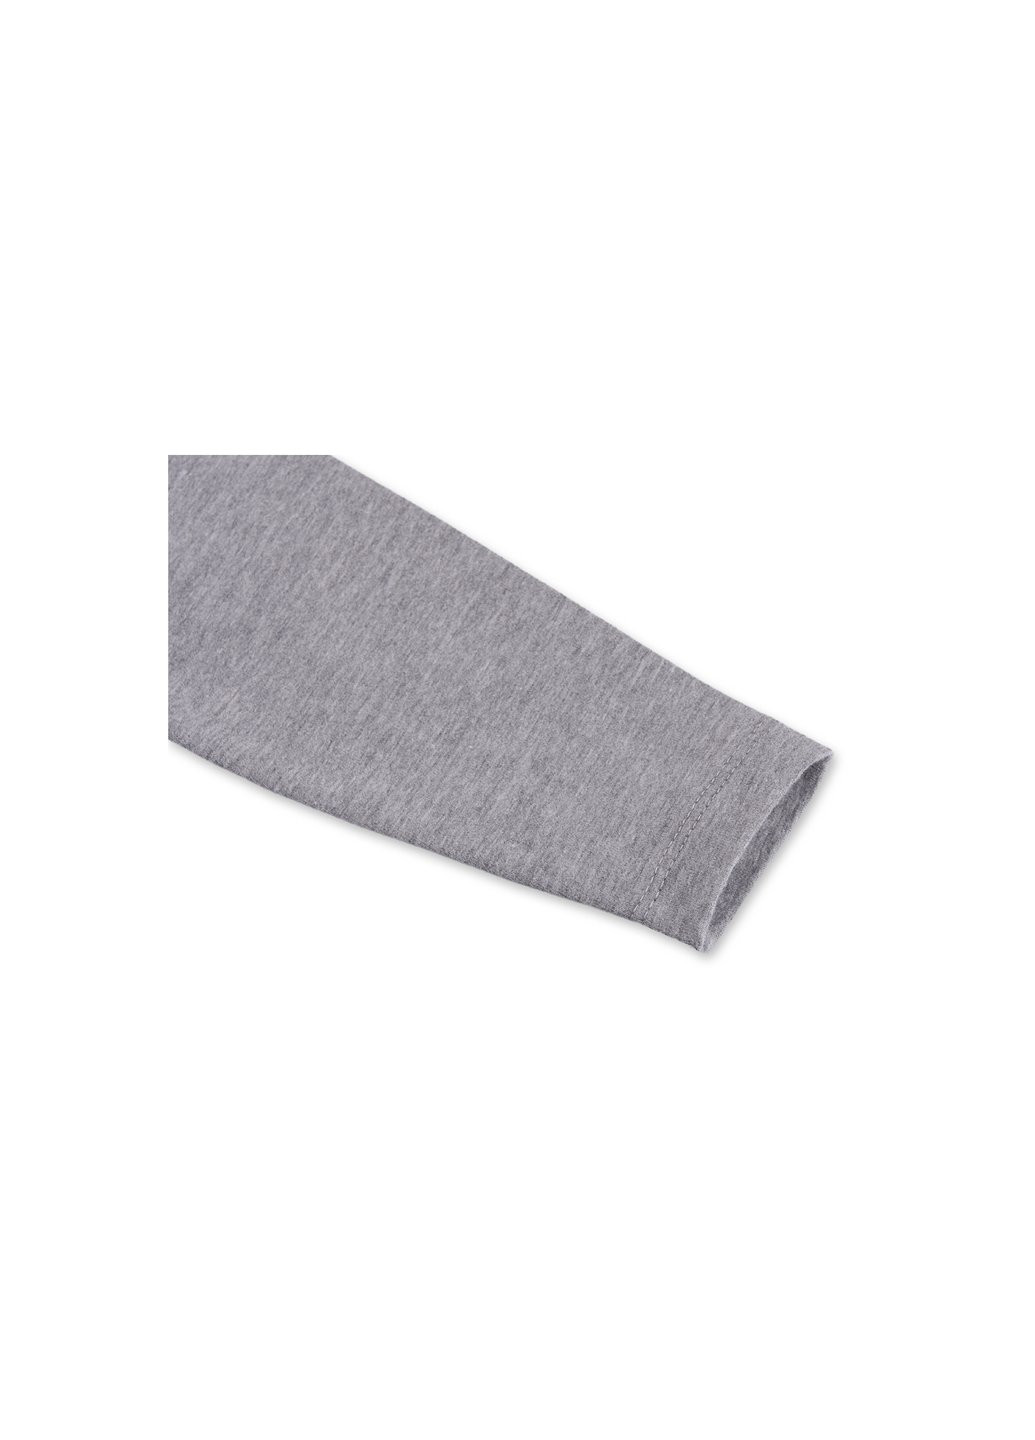 Серый демисезонный набор детской одежды кофта и брюки серый меланж " brooklyn" (7882-86b-gray) Breeze